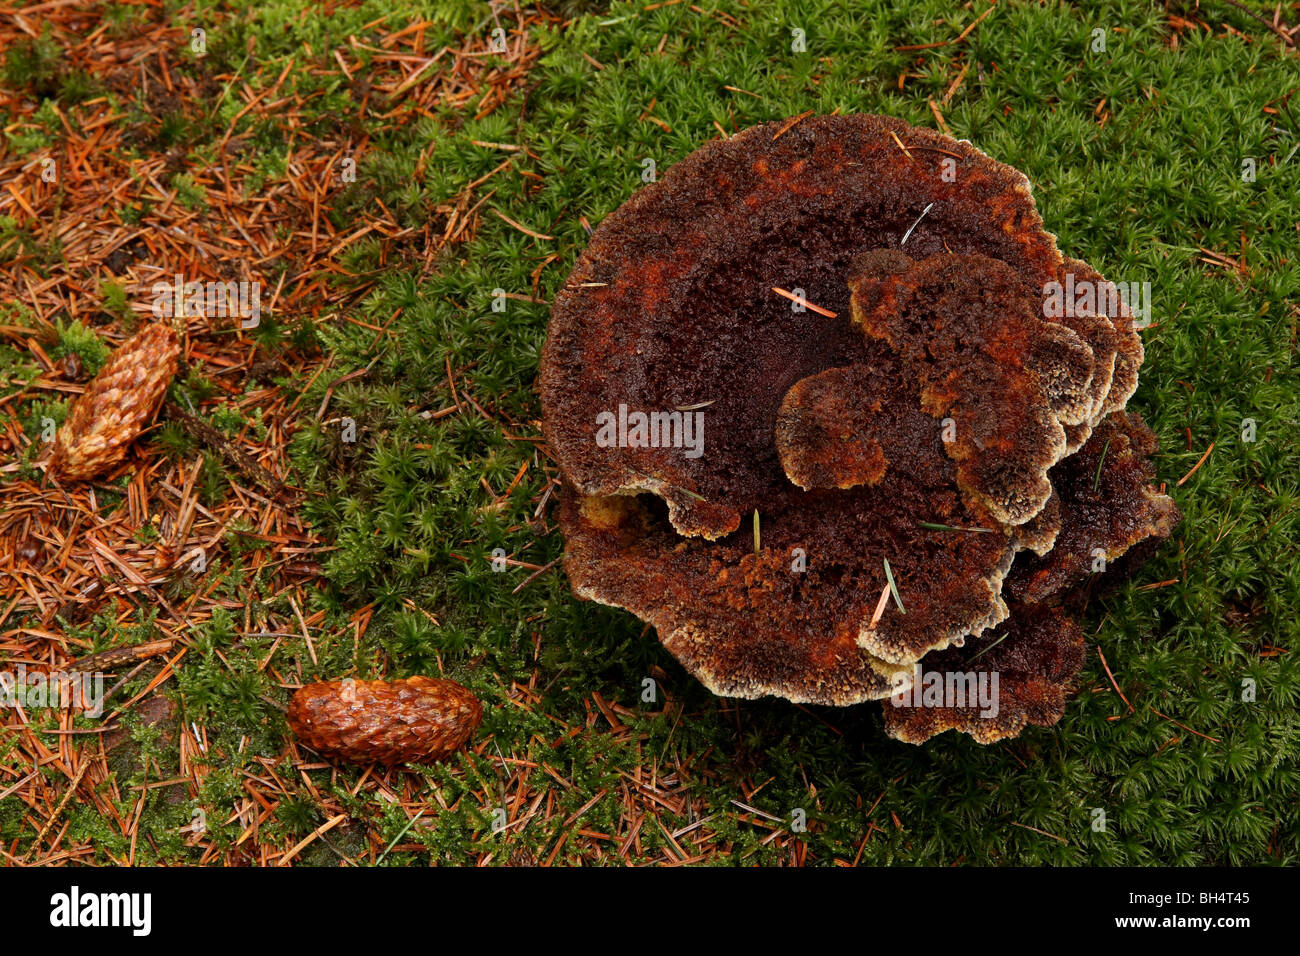 Große Phaeolus Schweinitzii Pilze wachsen auf Moos in einem Pinienwald. Stockfoto